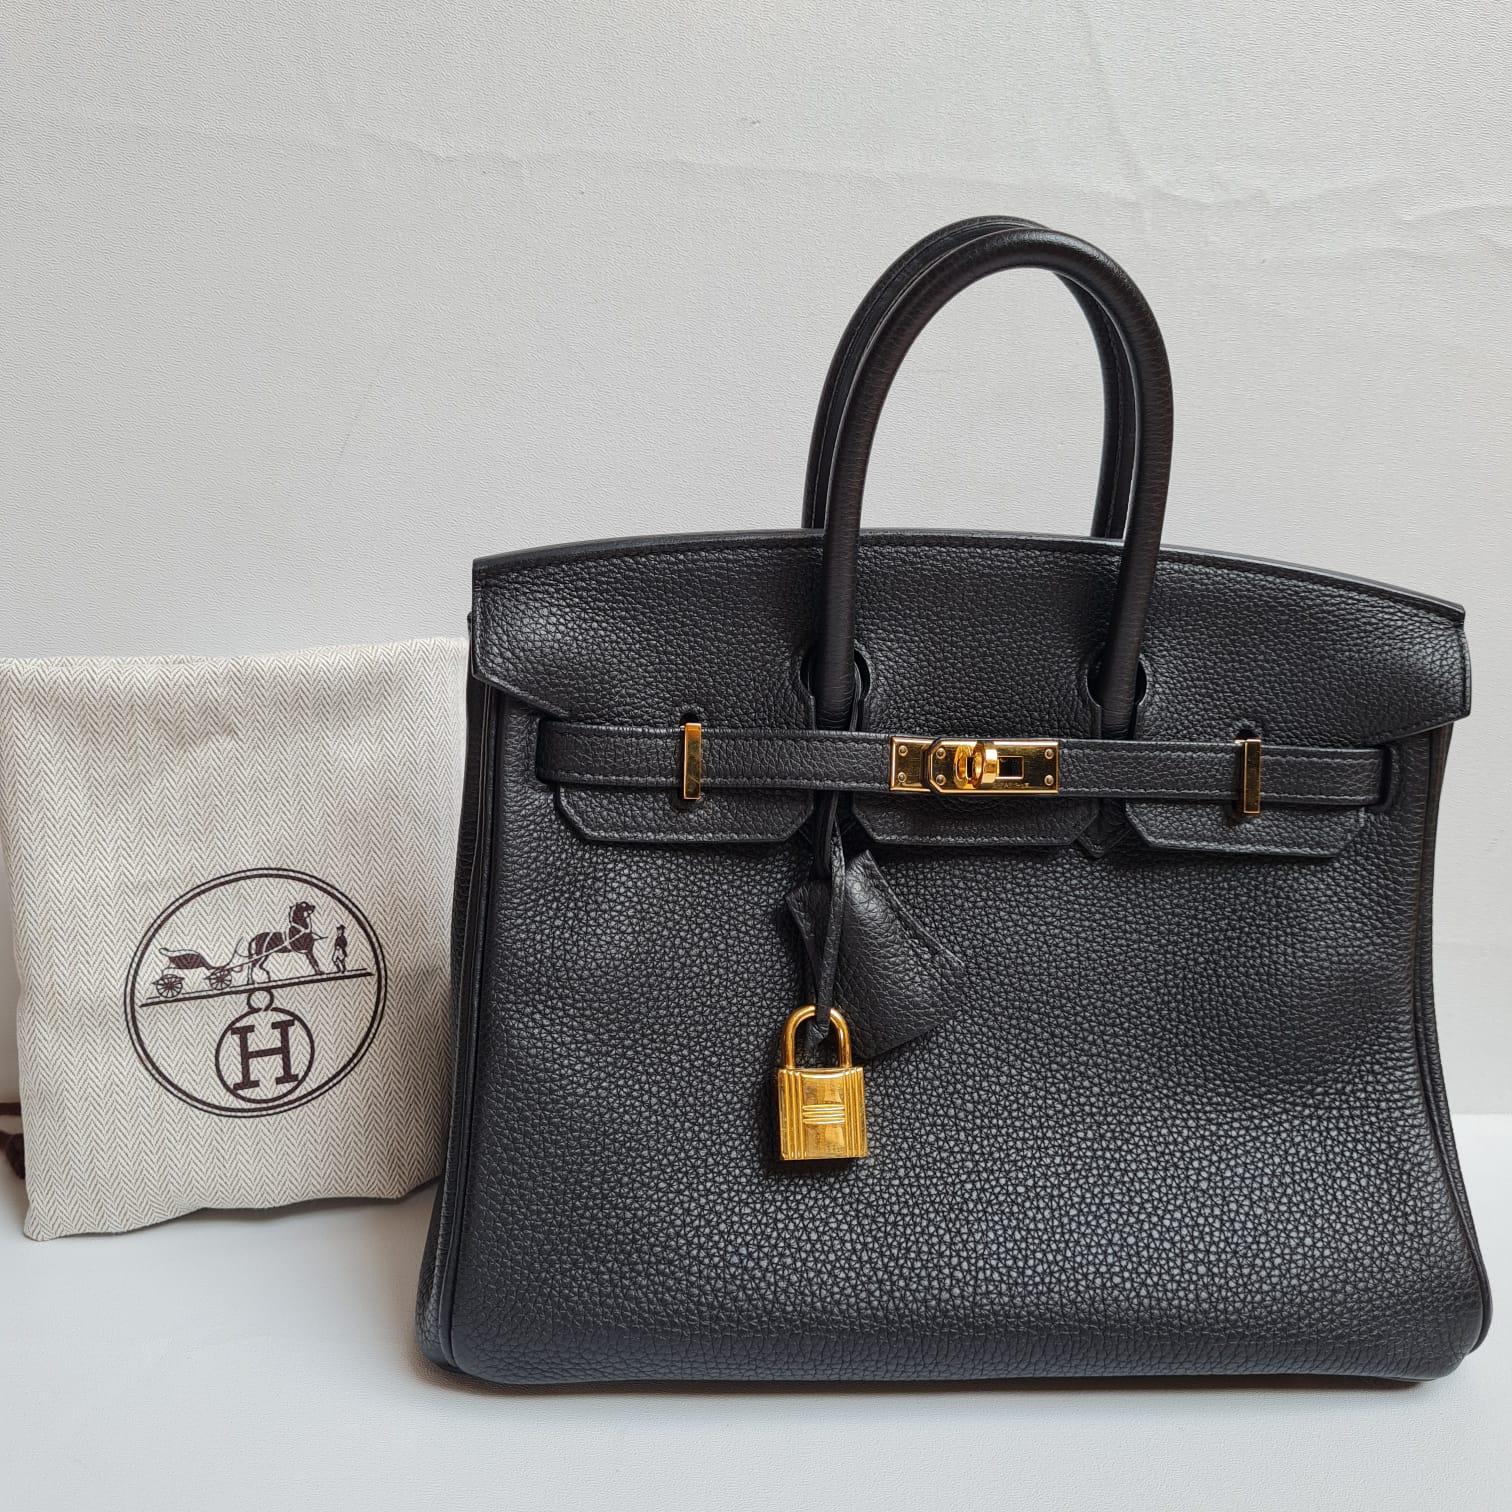 Hermes Birkin 25 Togo Black GHW Bag For Sale 5